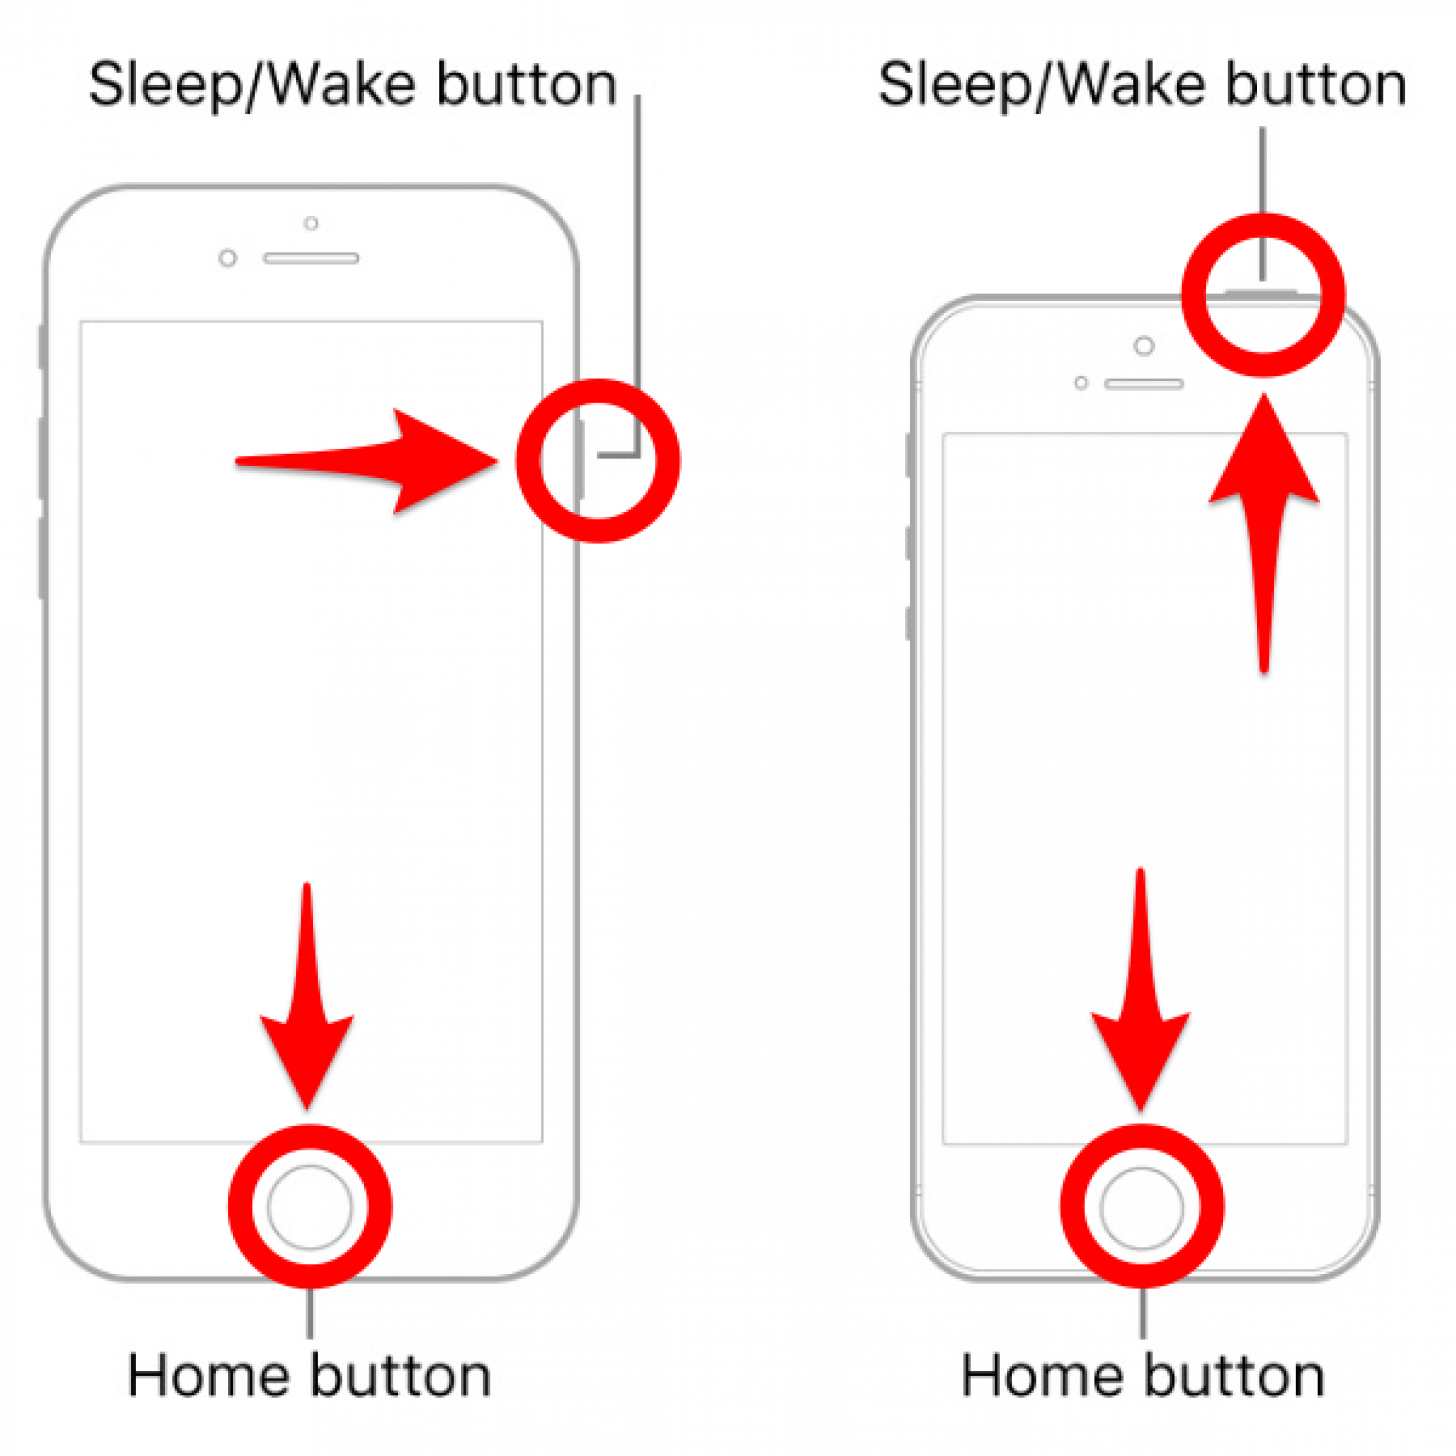 Presione el botón Inicio y el botón Suspender/Activar simultáneamente; no puedo apagar el iPhone